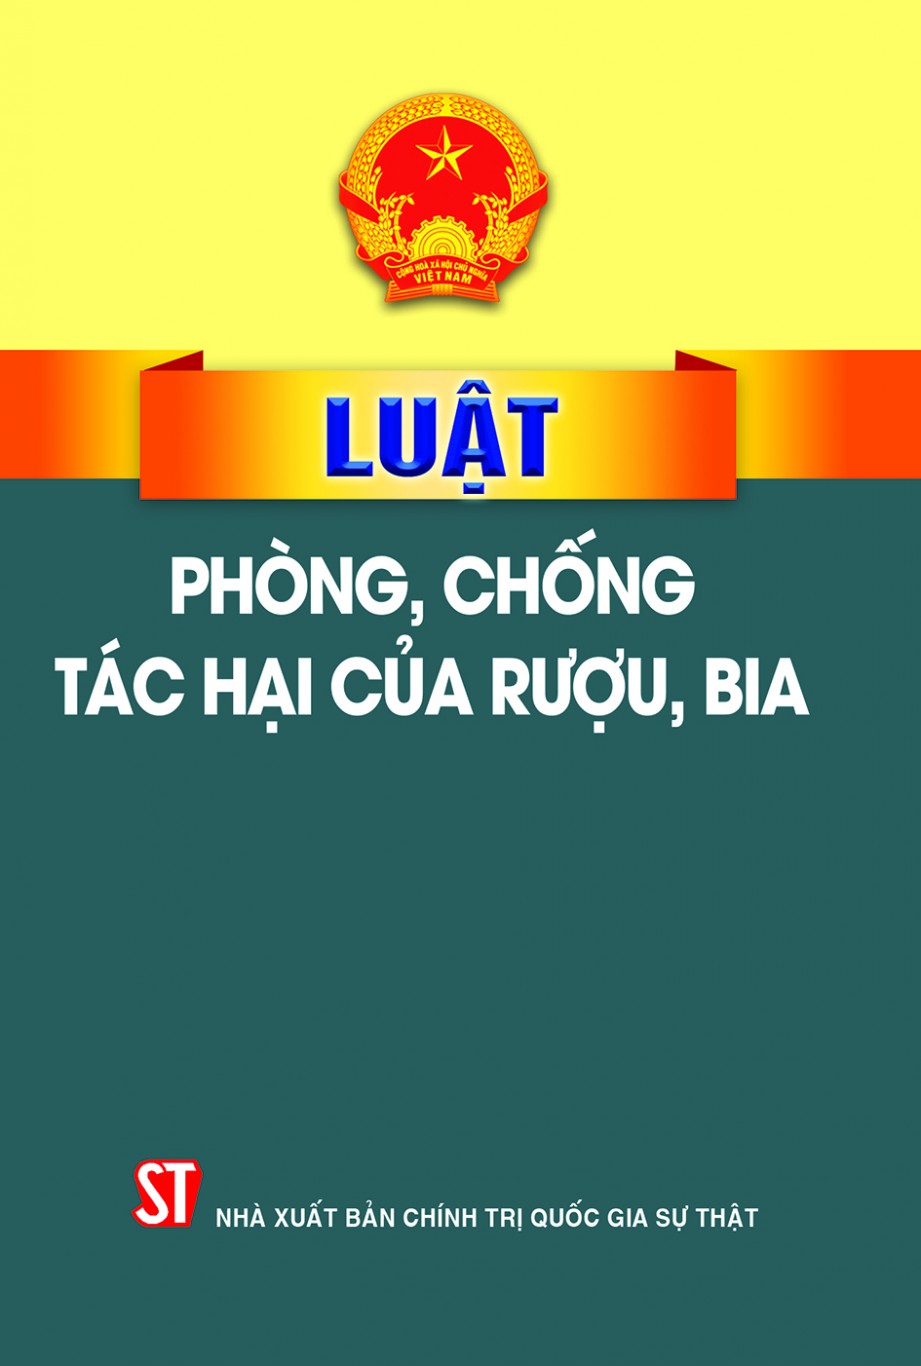 Ủy ban nhân dân tỉnh Bình Phước chỉ đạo tăng cường công tác  phòng, chống tác hại của rượu, bia